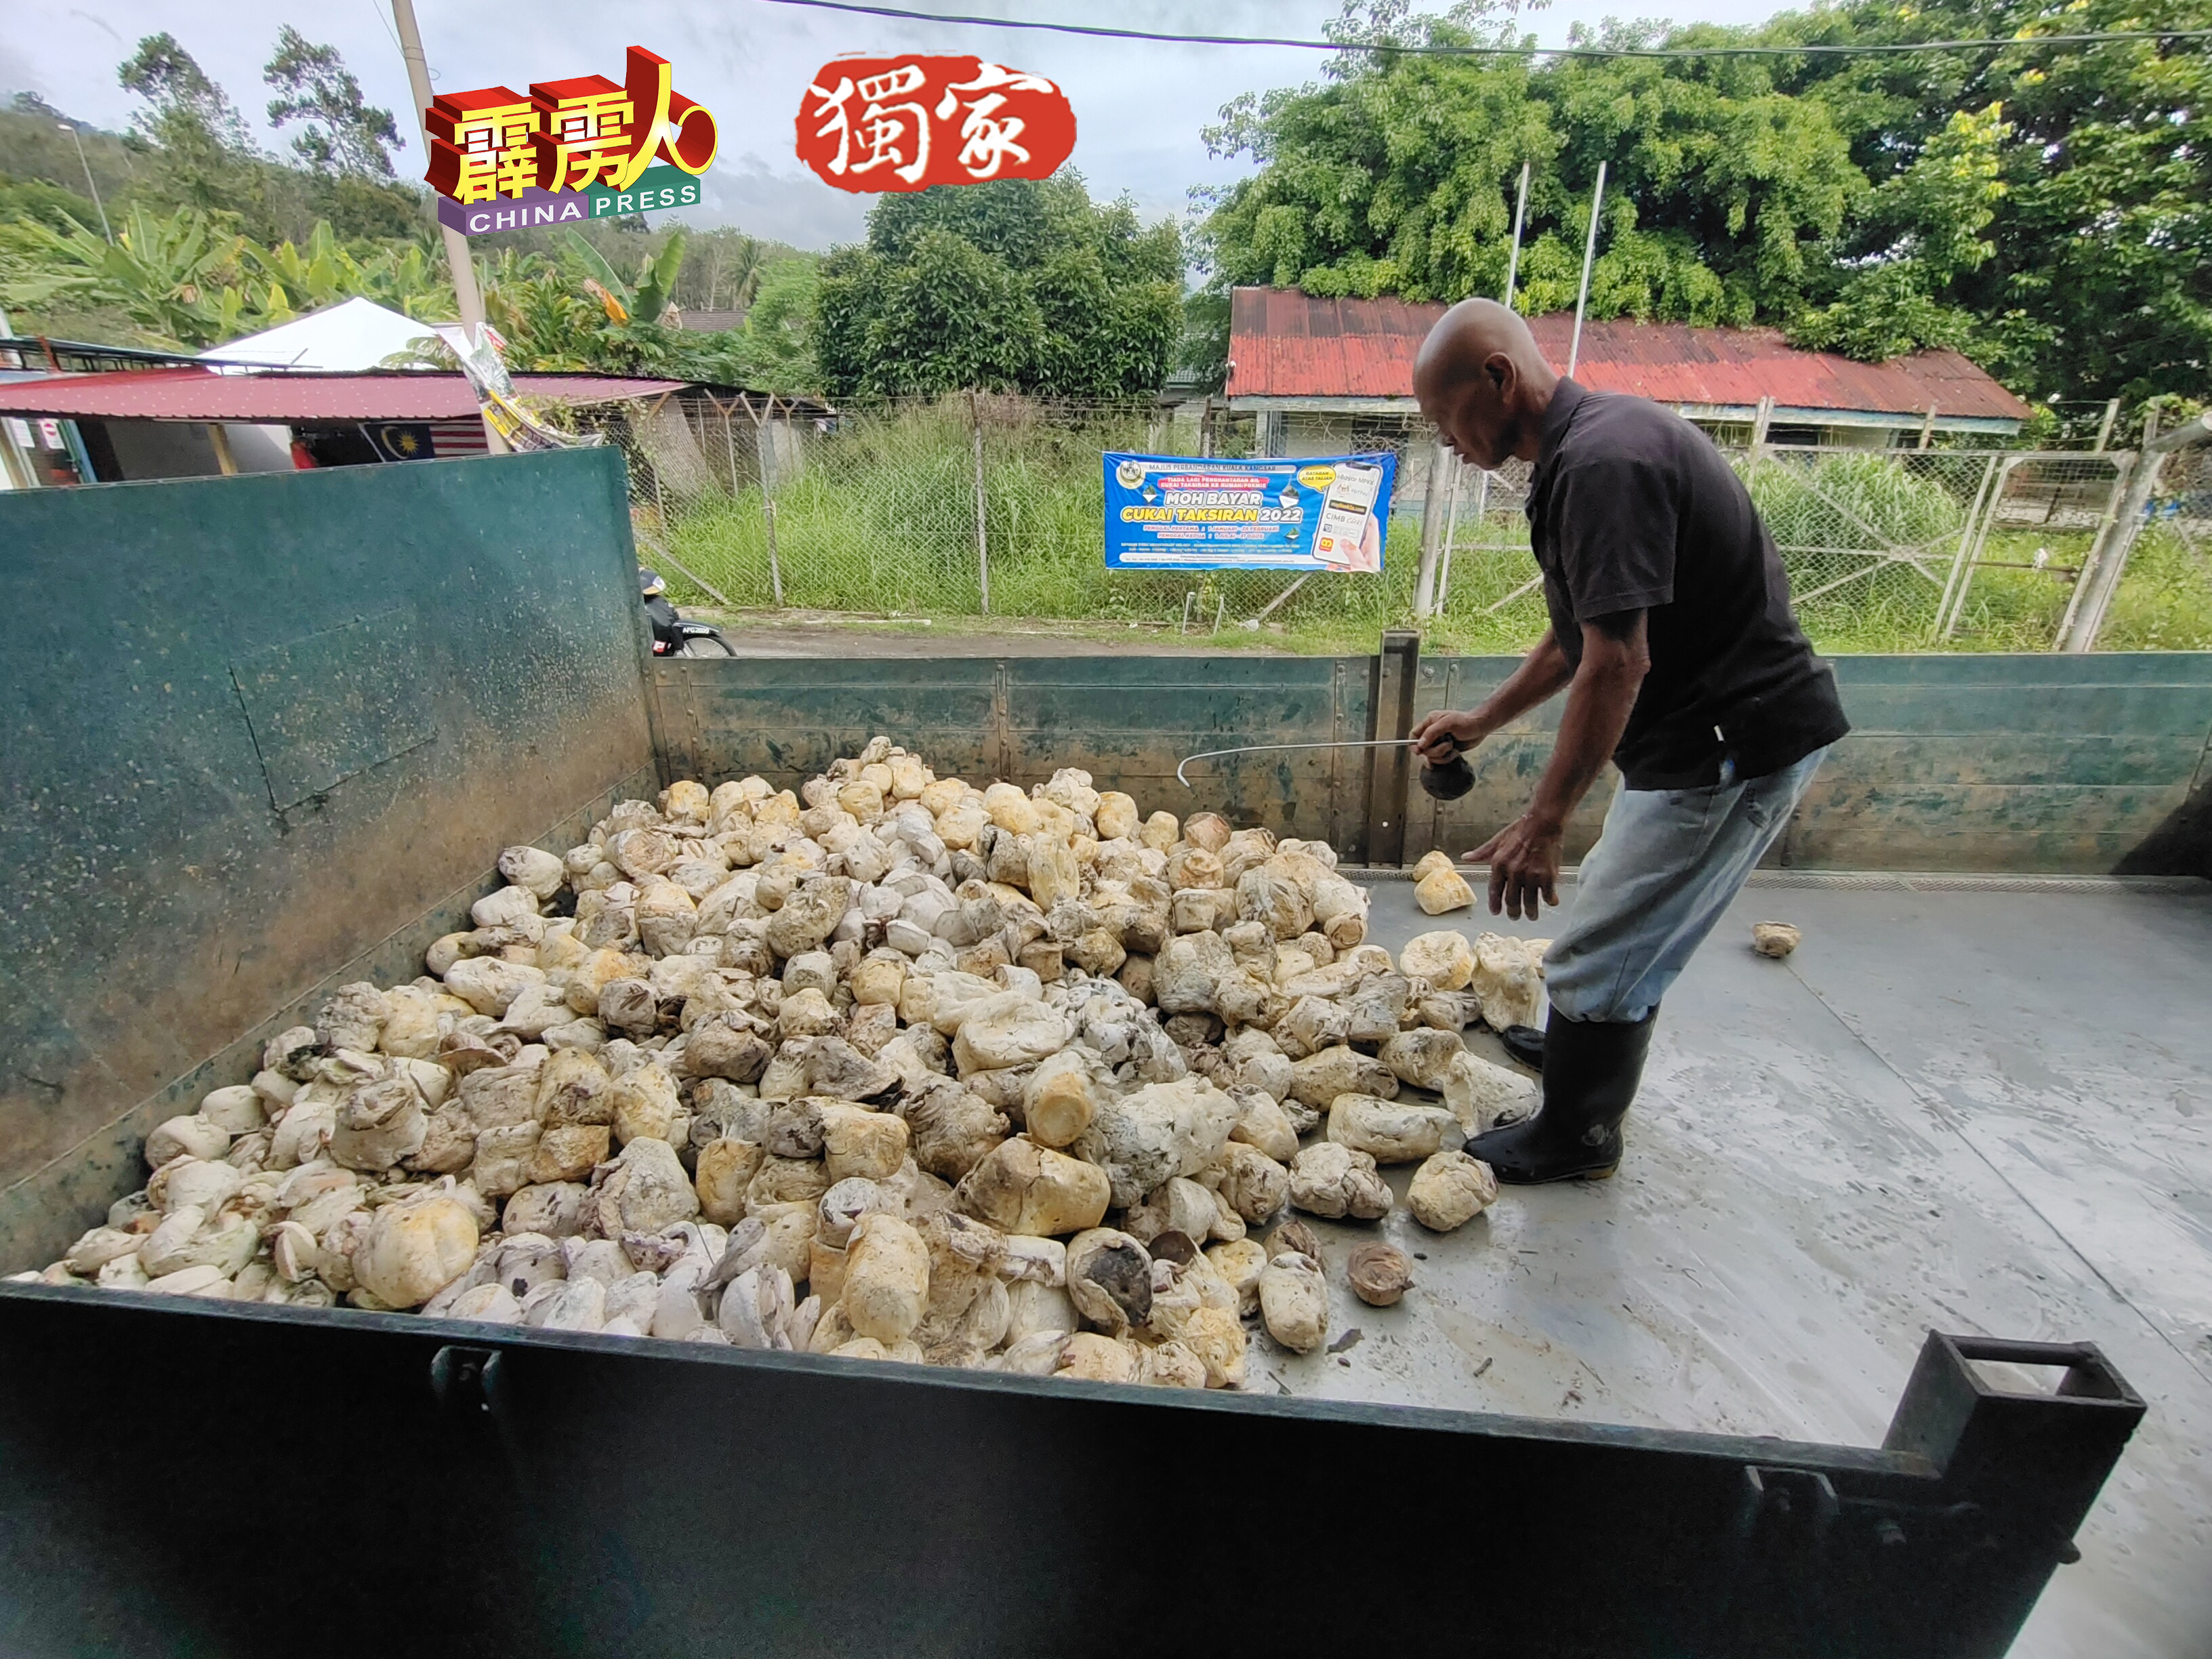 天气好的时候，利民加地新村橡胶收购商每天平均可以收到约5吨的胶丸，如今面对雨季、胶价及霉叶病打击，一天只收获逾500公斤的胶丸。